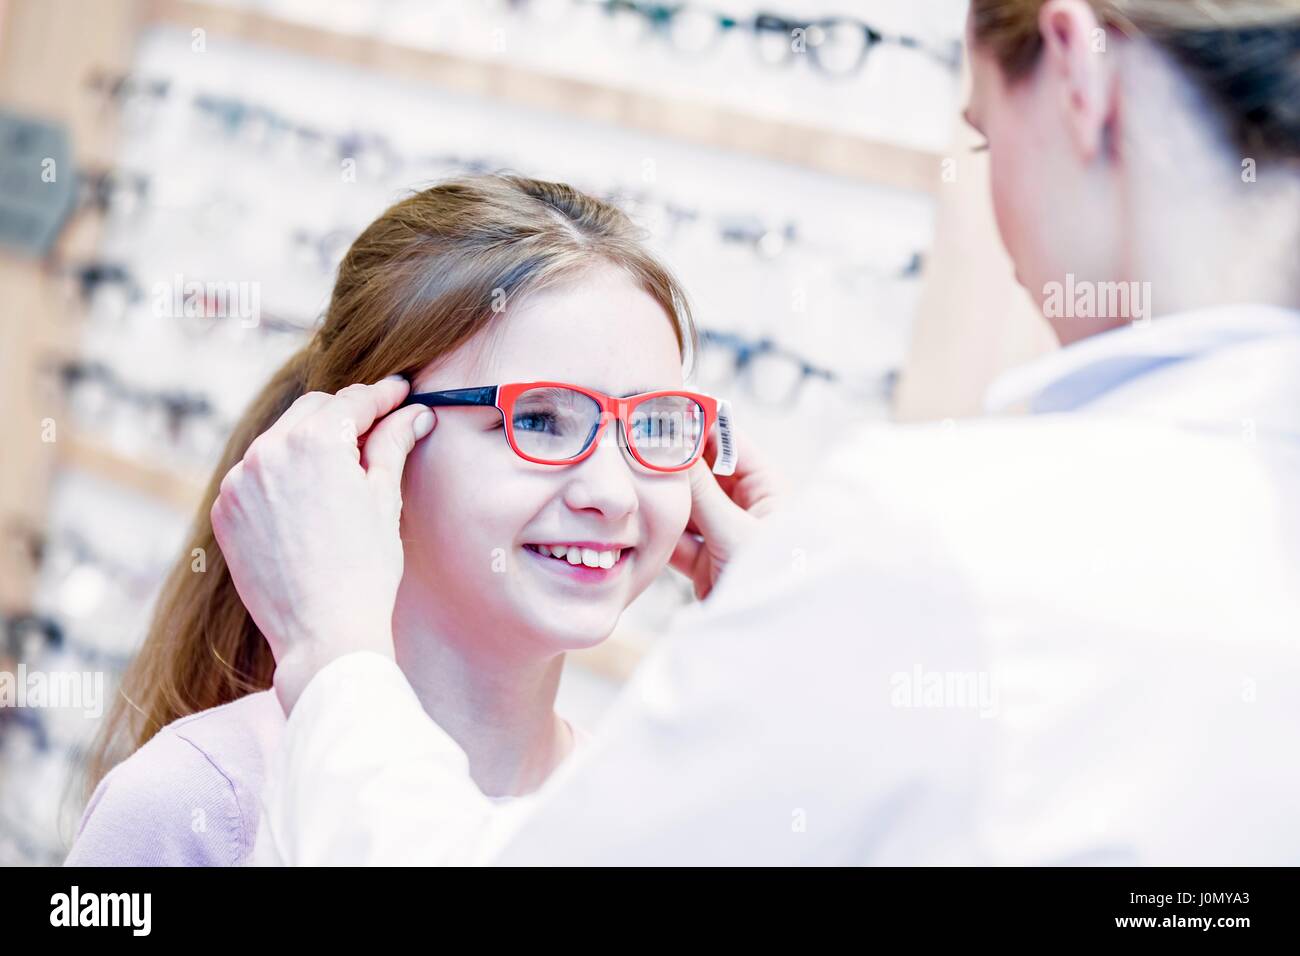 All'ottico optometrista cercando gli occhiali sulla ragazza in all'ottico optometrista del negozio. Foto Stock